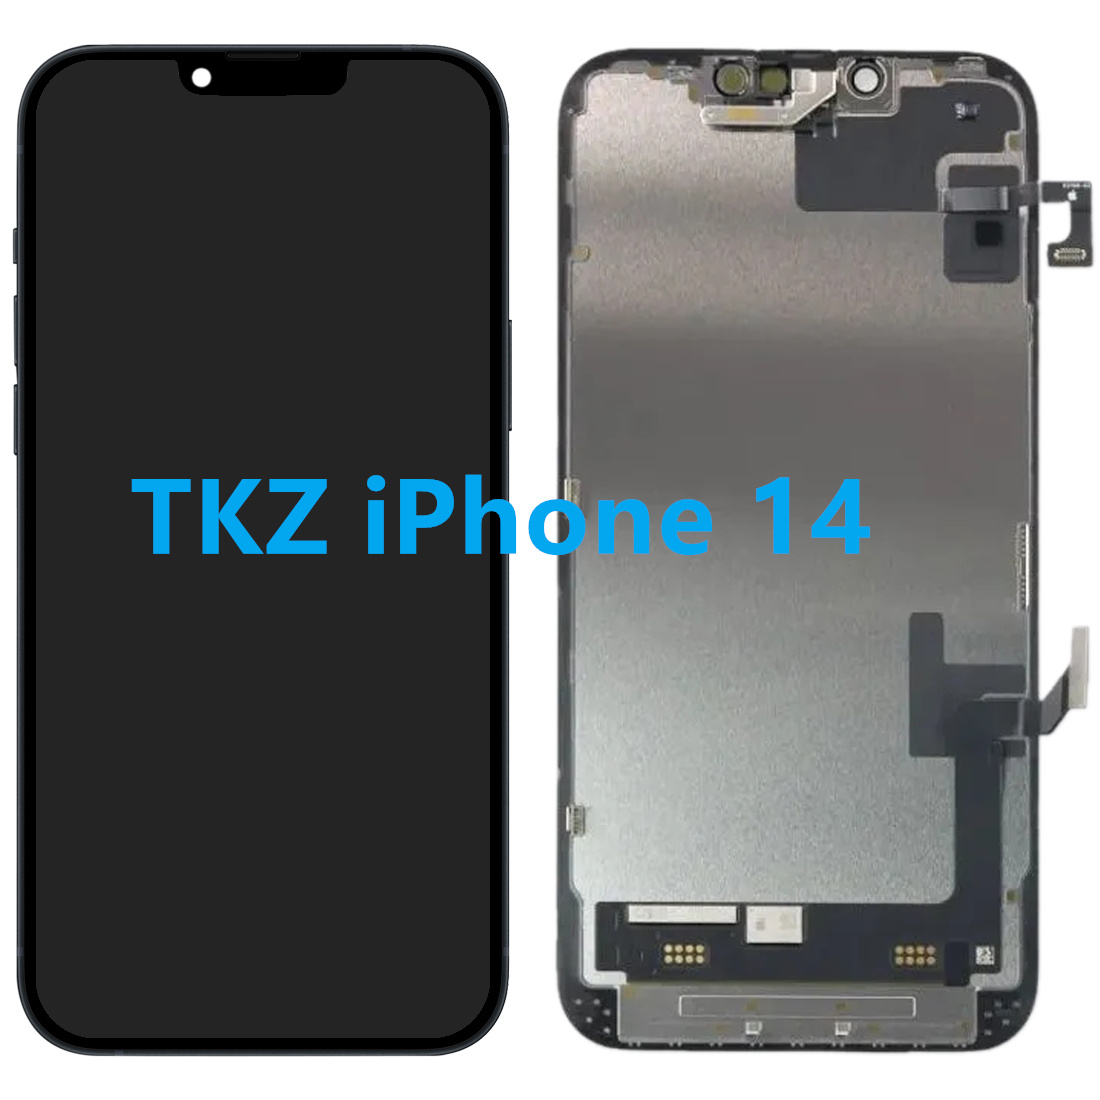 iPhone 14 TKZ Screen